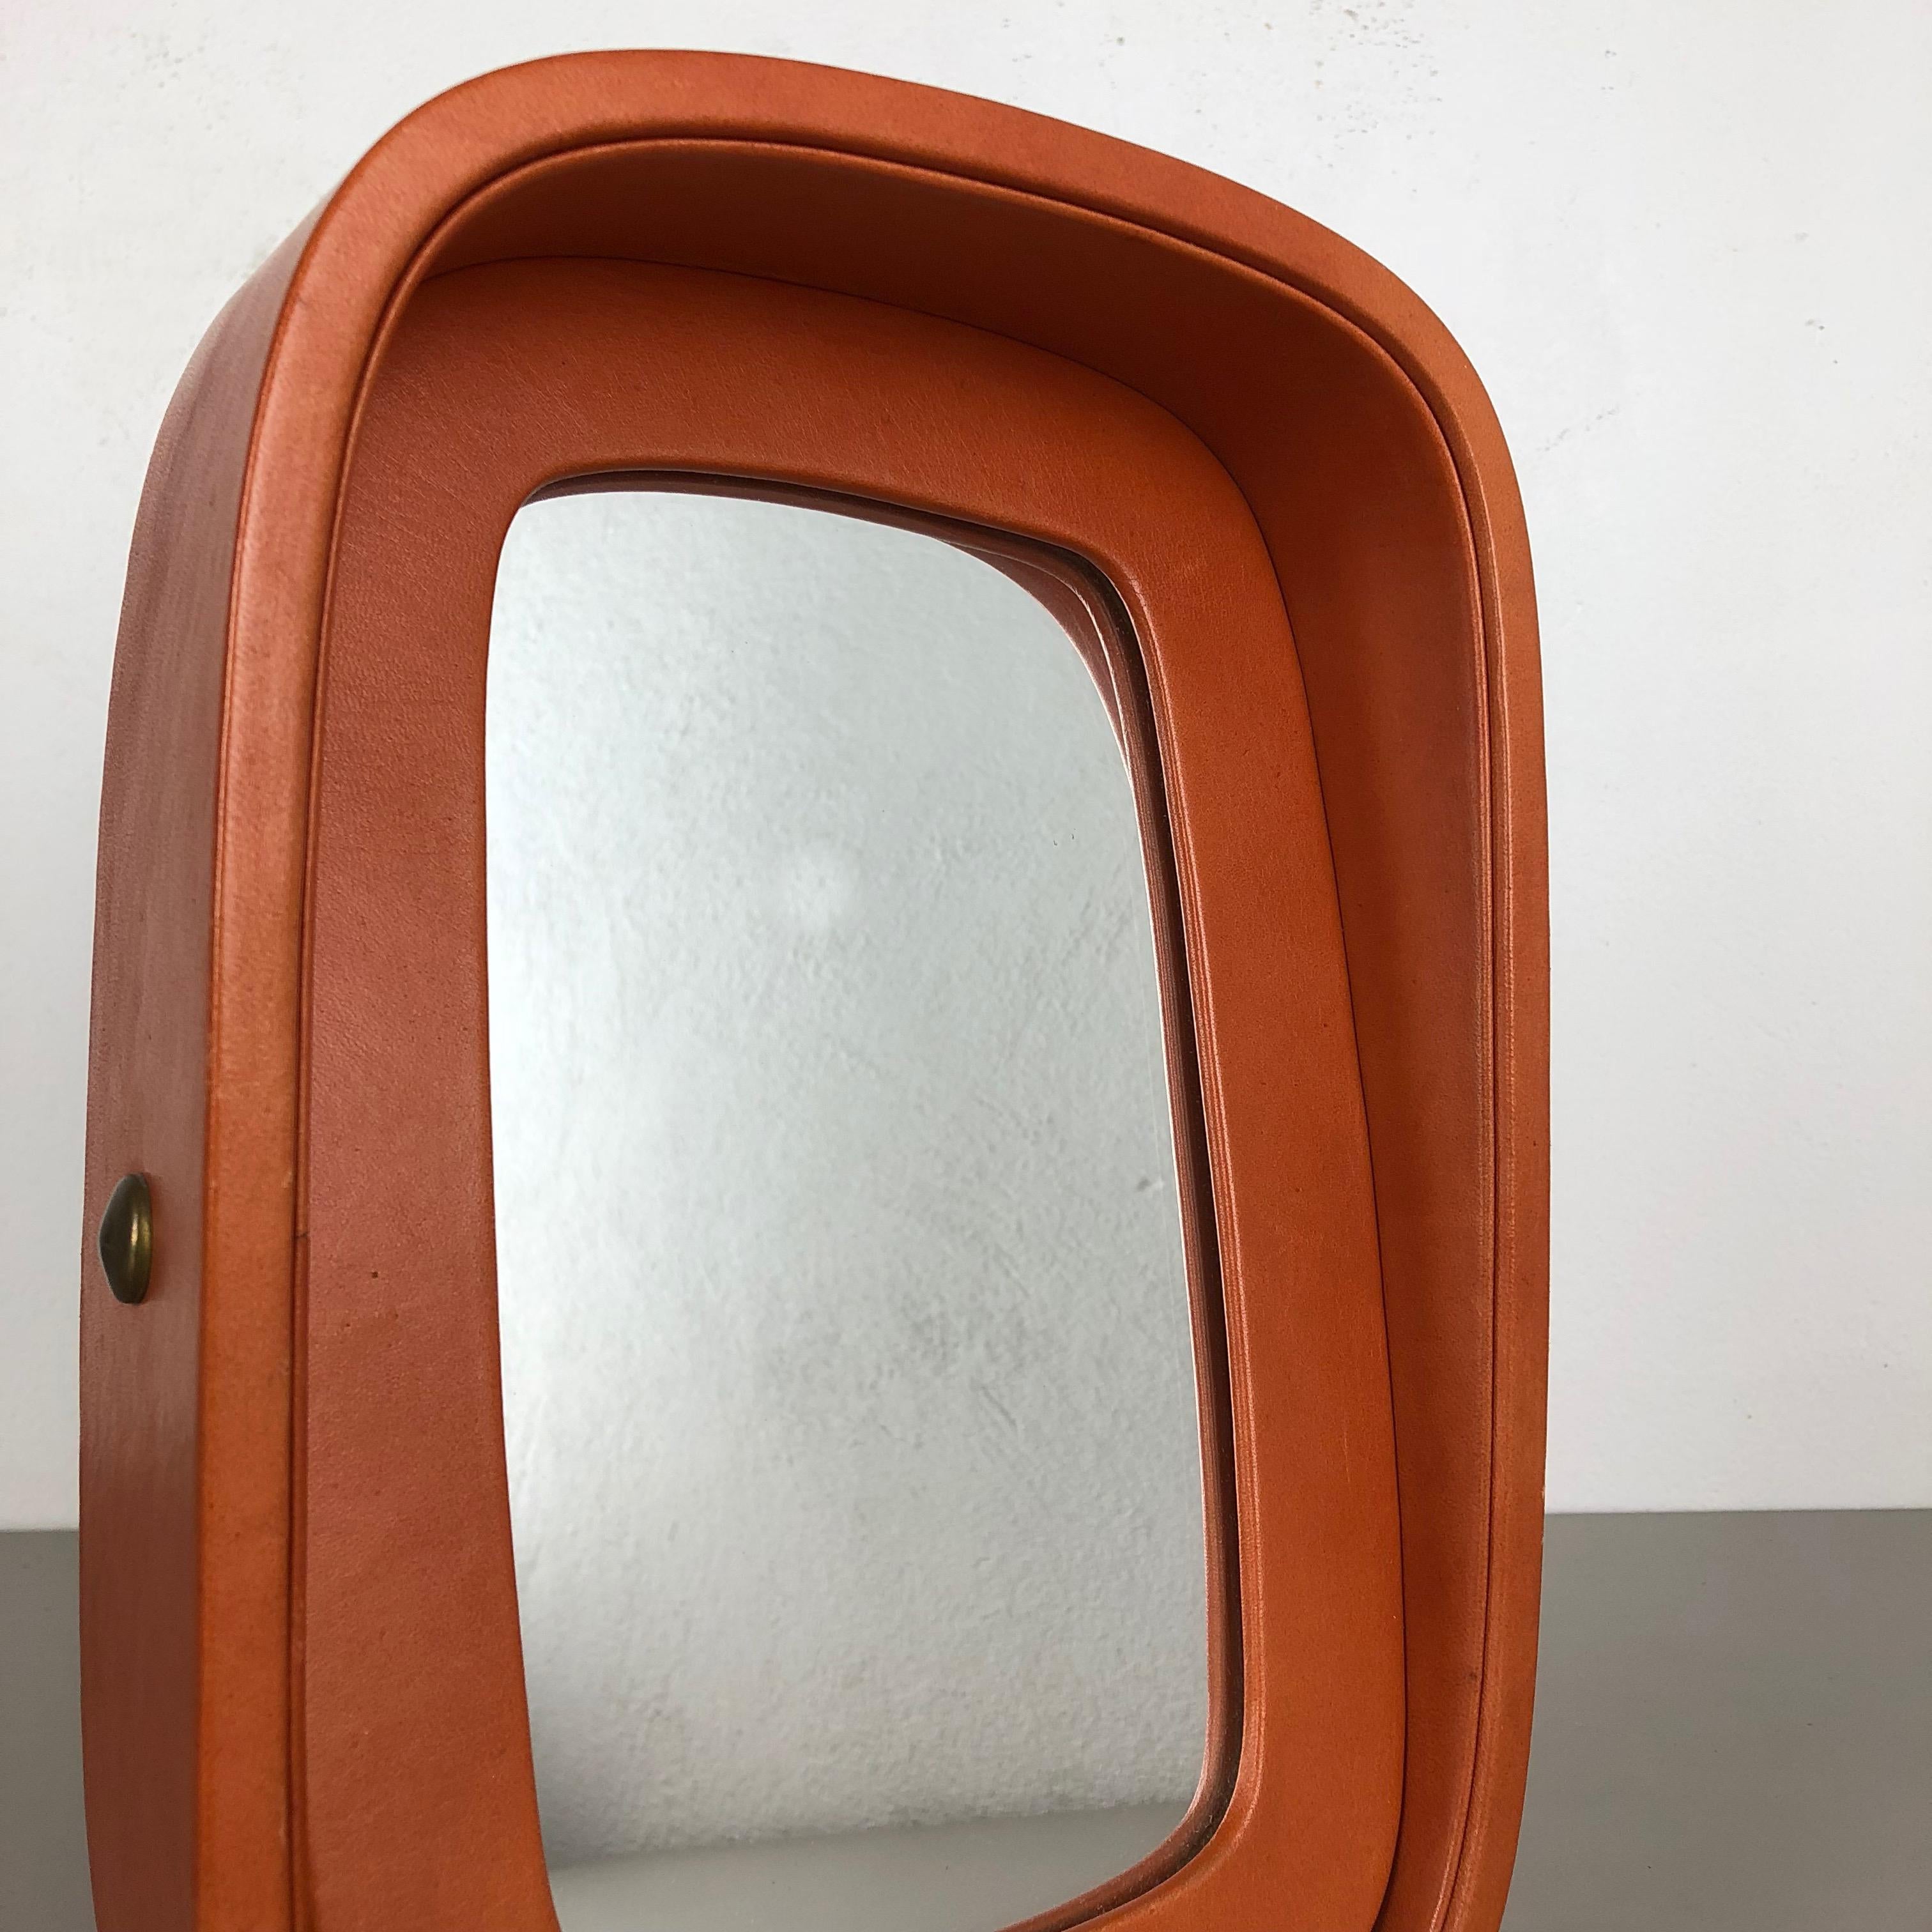 20th Century Modernist Leather Table Mirror Vereinigte Werkstätten Attrib., Germany, 1960s For Sale